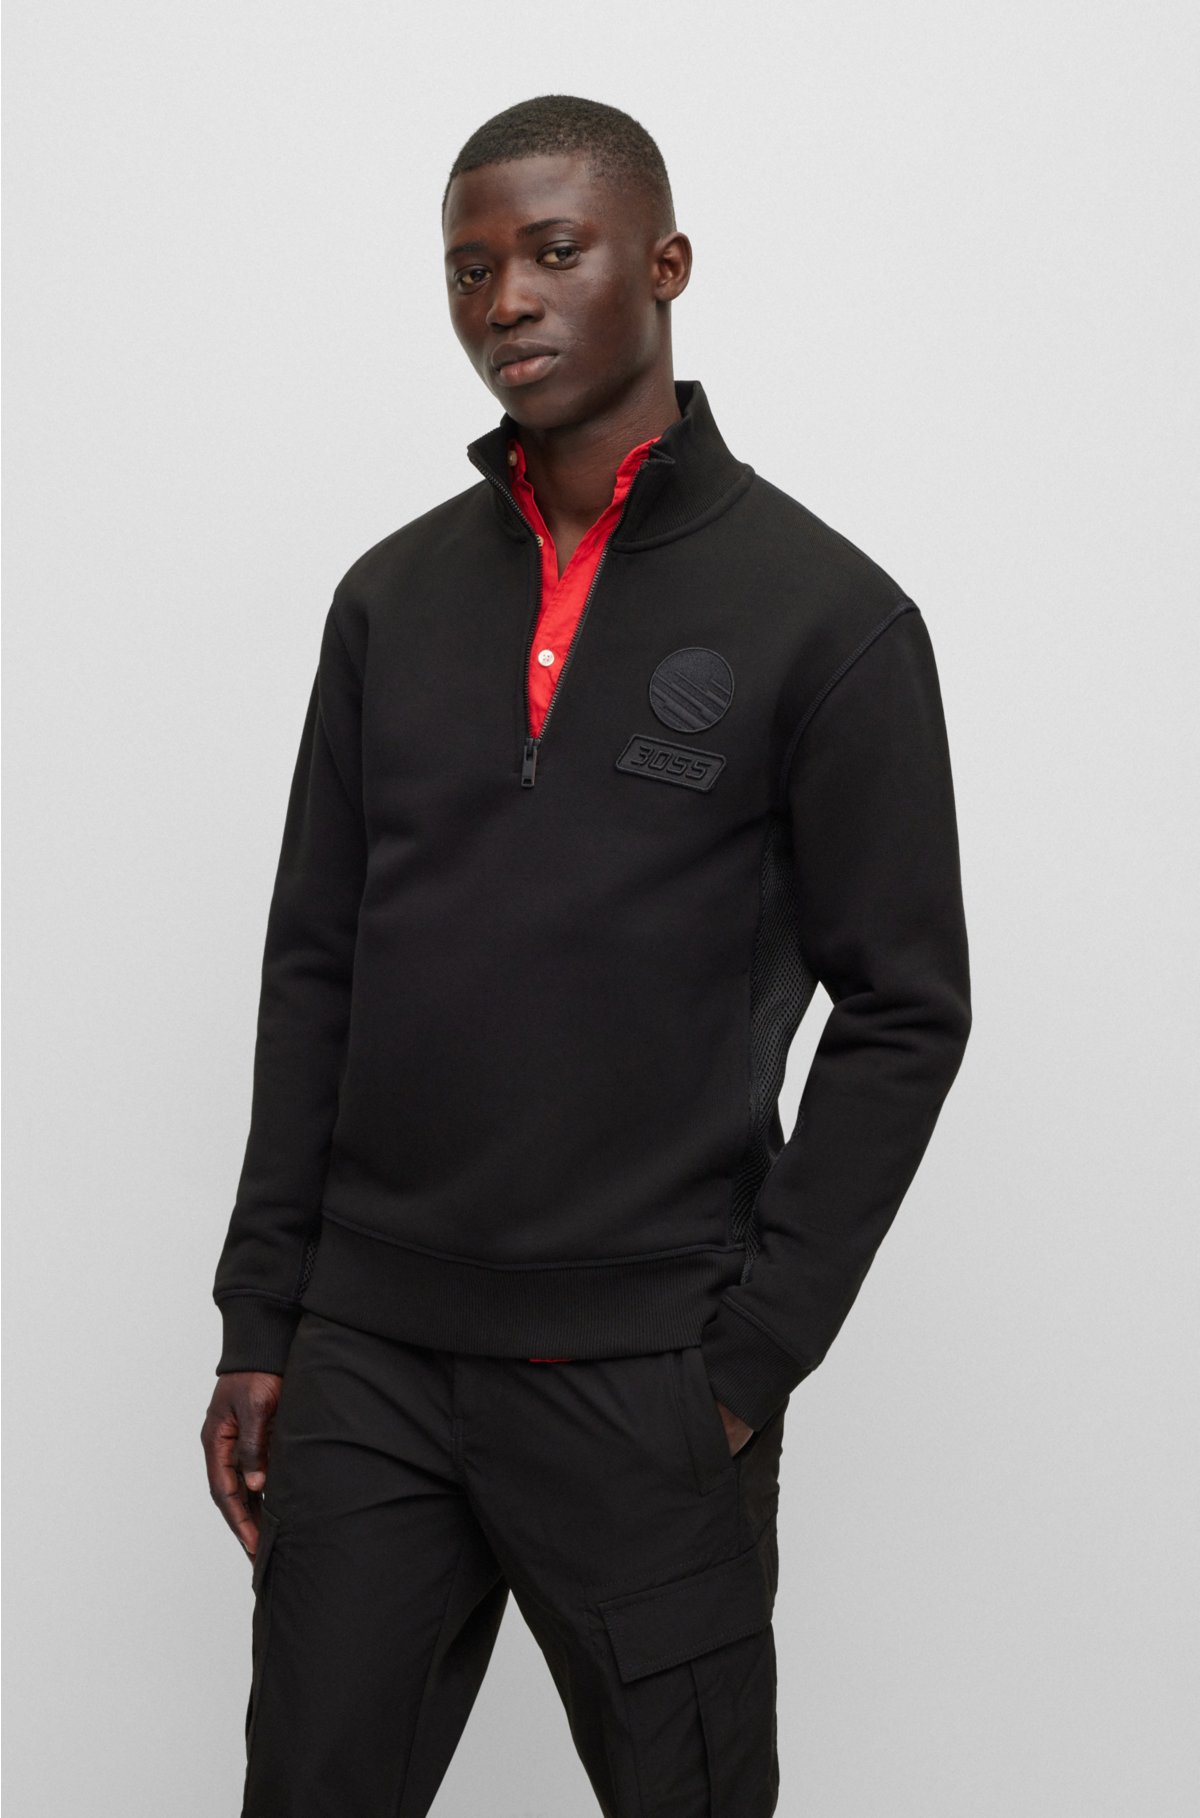 Cotton-terry zip-neck sweatshirt with racing-inspired details, Black